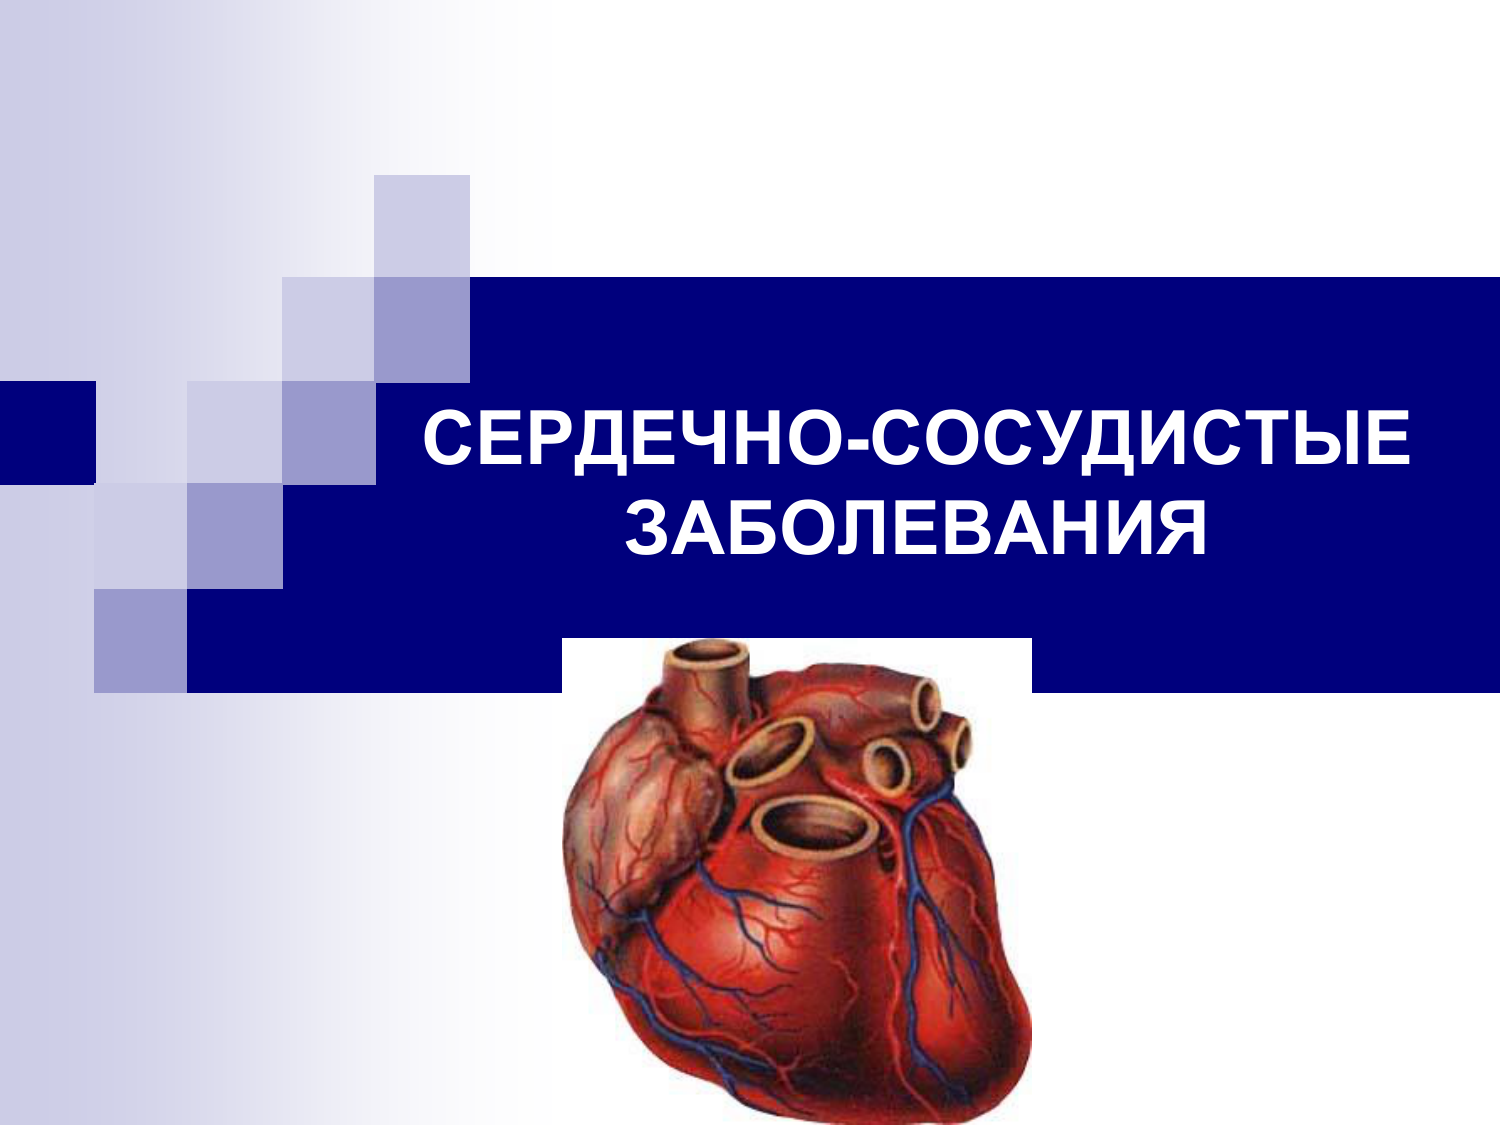 Сердечные заболевания сообщение. Сердечно-сосудистые заболевания. Болезни сердечно-сосудистой системы. Патология сердечно сосудистой системы. Презентация на тему сердечно сосудистые заболевания.